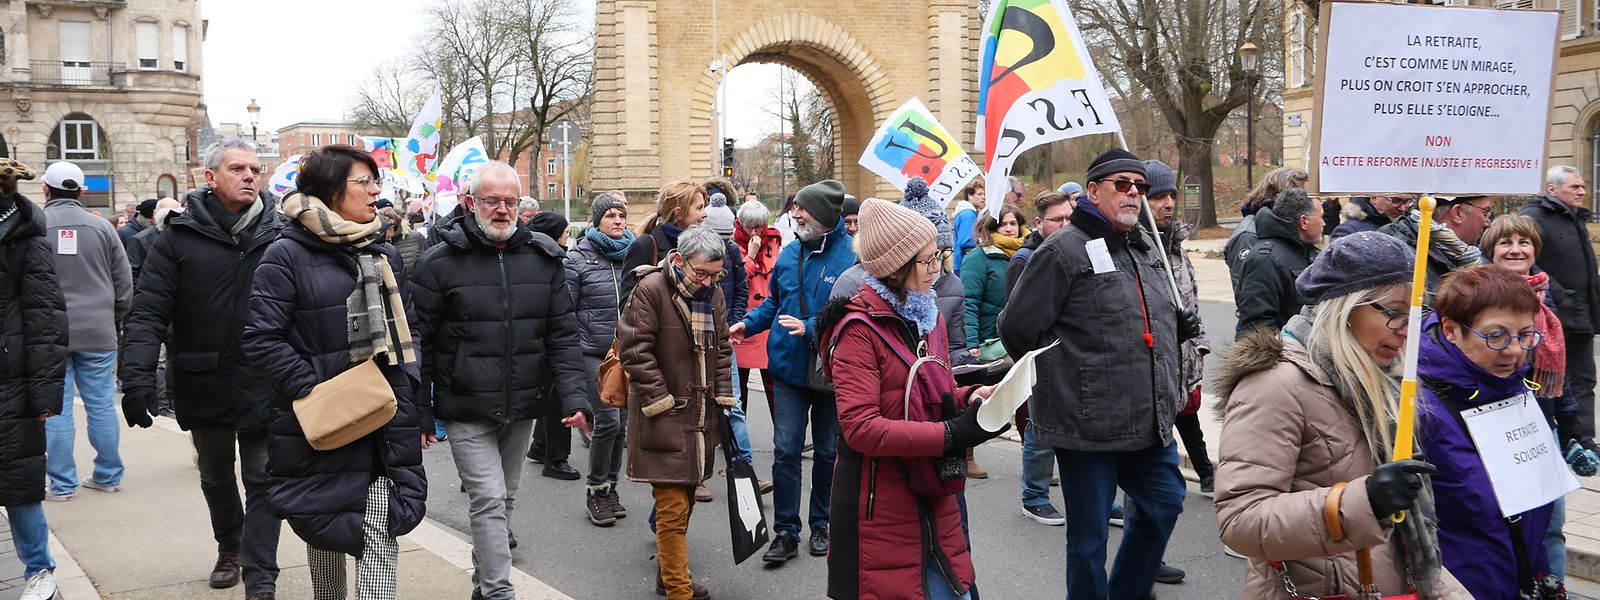 Alors que les premiers manifestants atteignaient déjà les rues du centre-ville de Metz, la queue du cortège s'élançait seulement de la place Mazelle. 